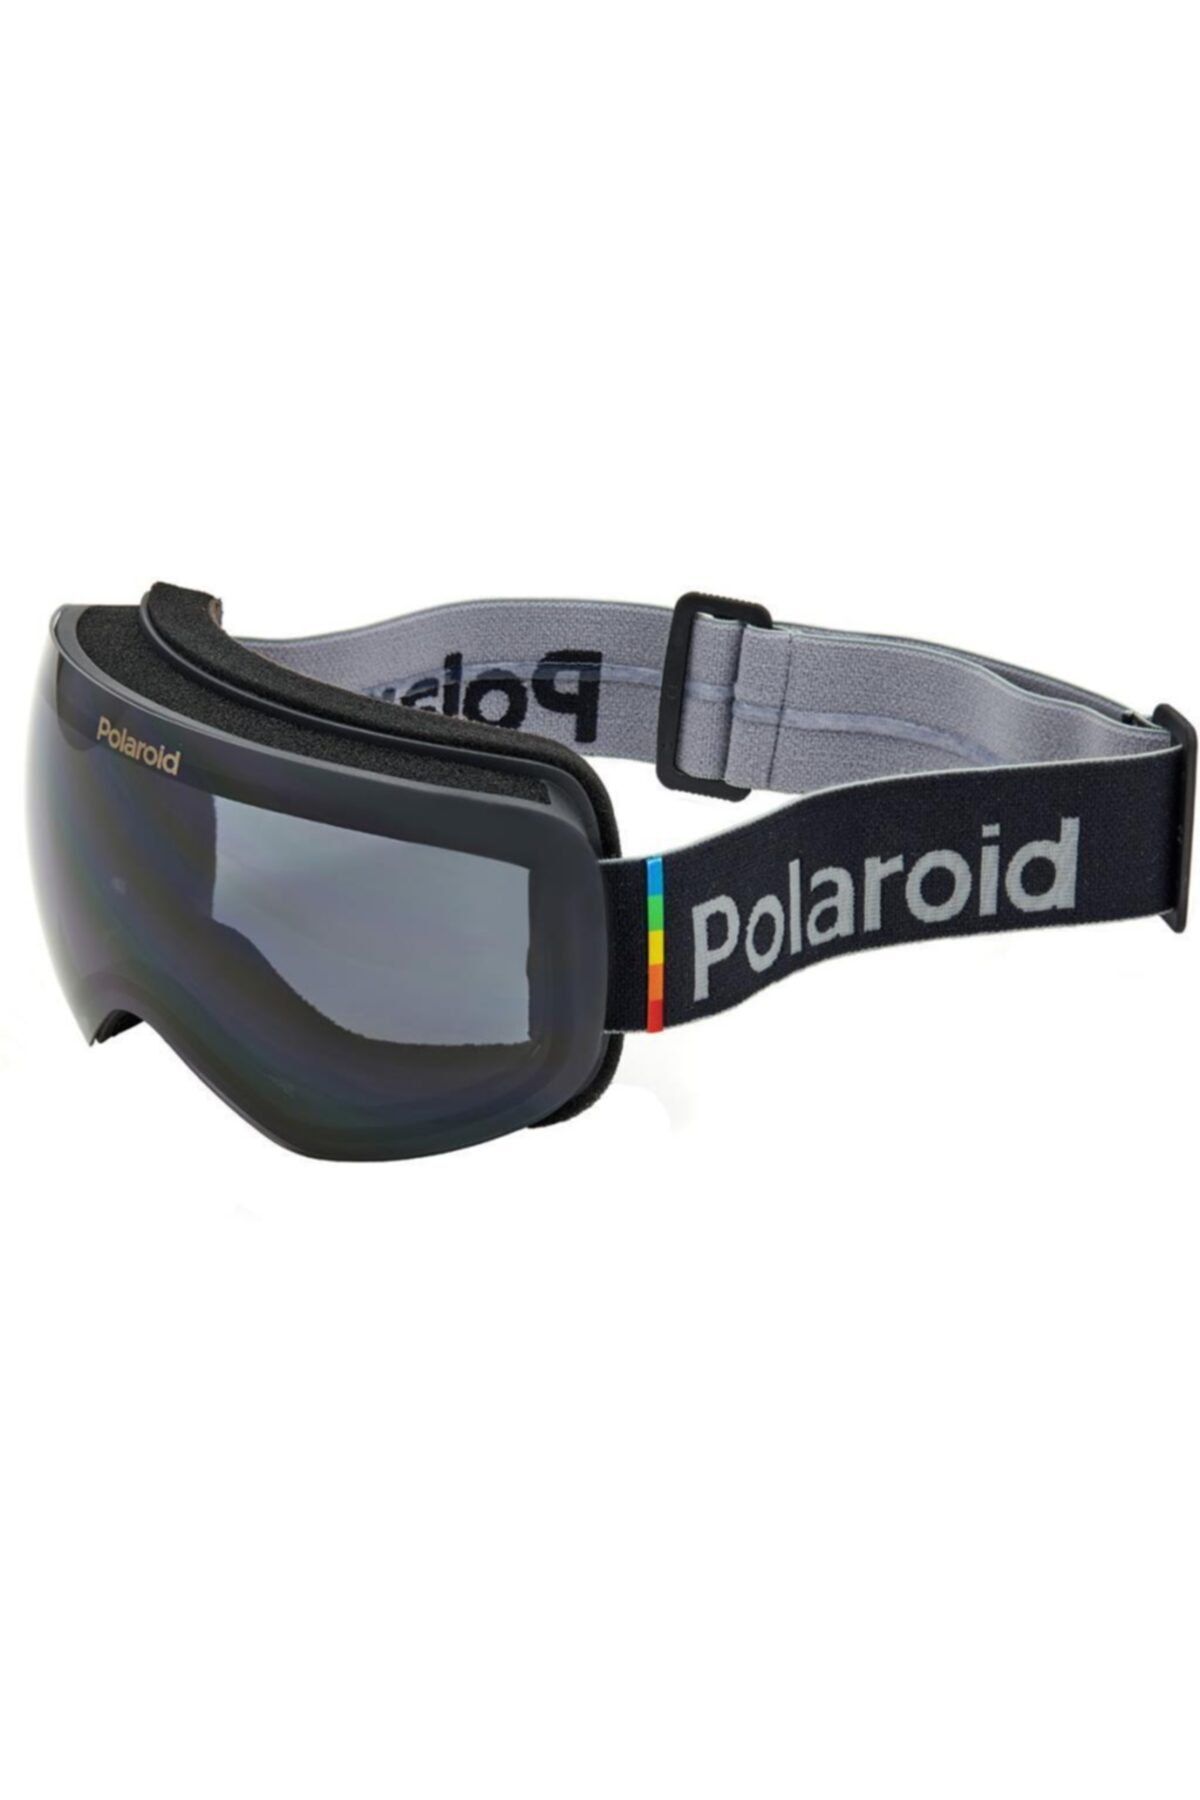 Polaroid Mask 01 9ks Ex Polarize Kayak Gözlüğü